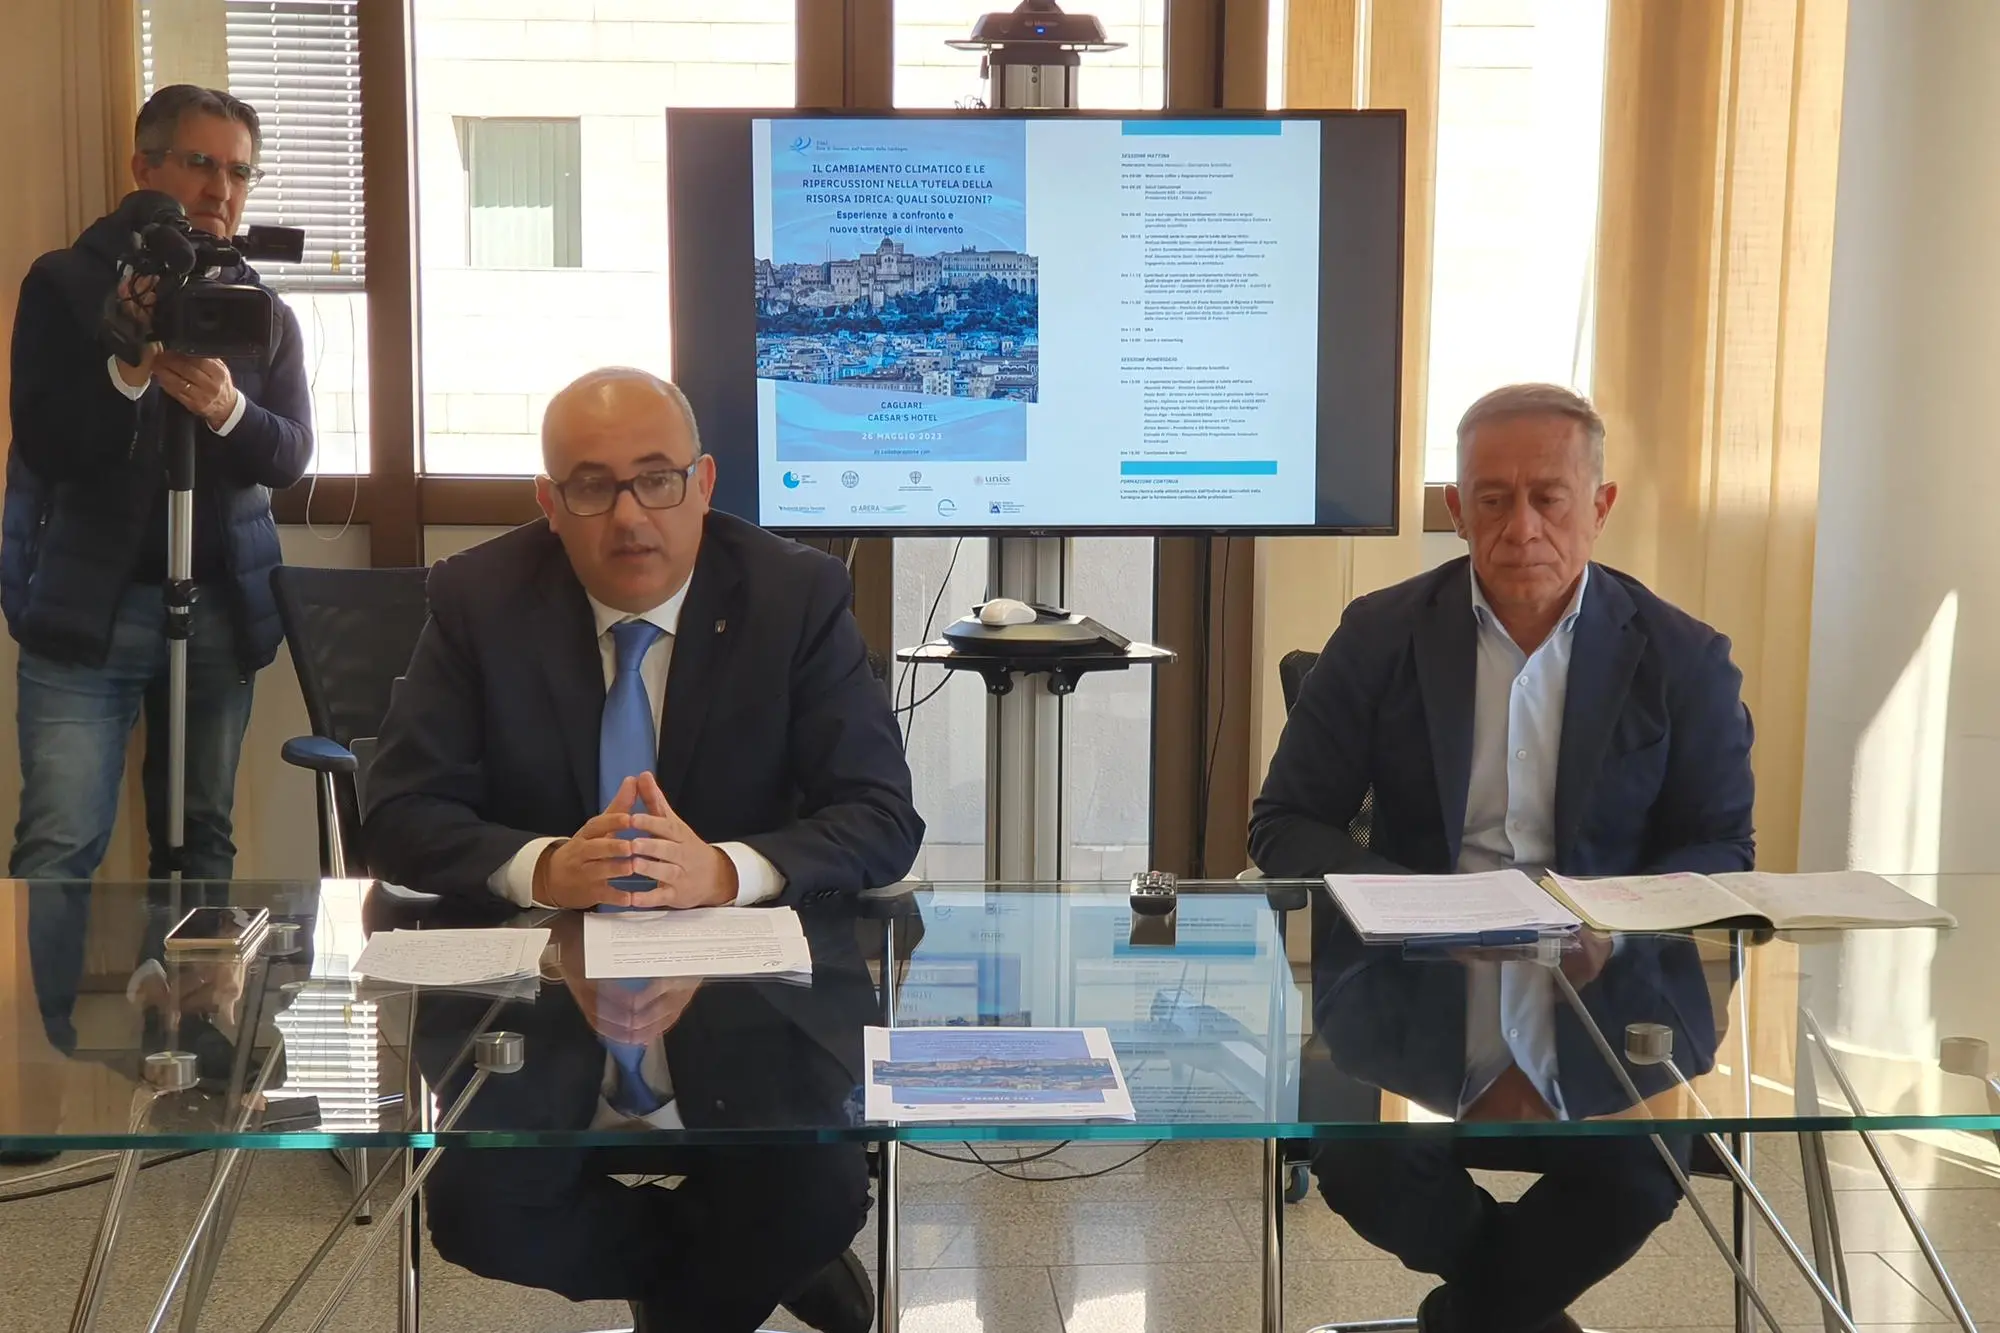 La presentazione dei dati e del convegno a Cagliari (foto Egas)